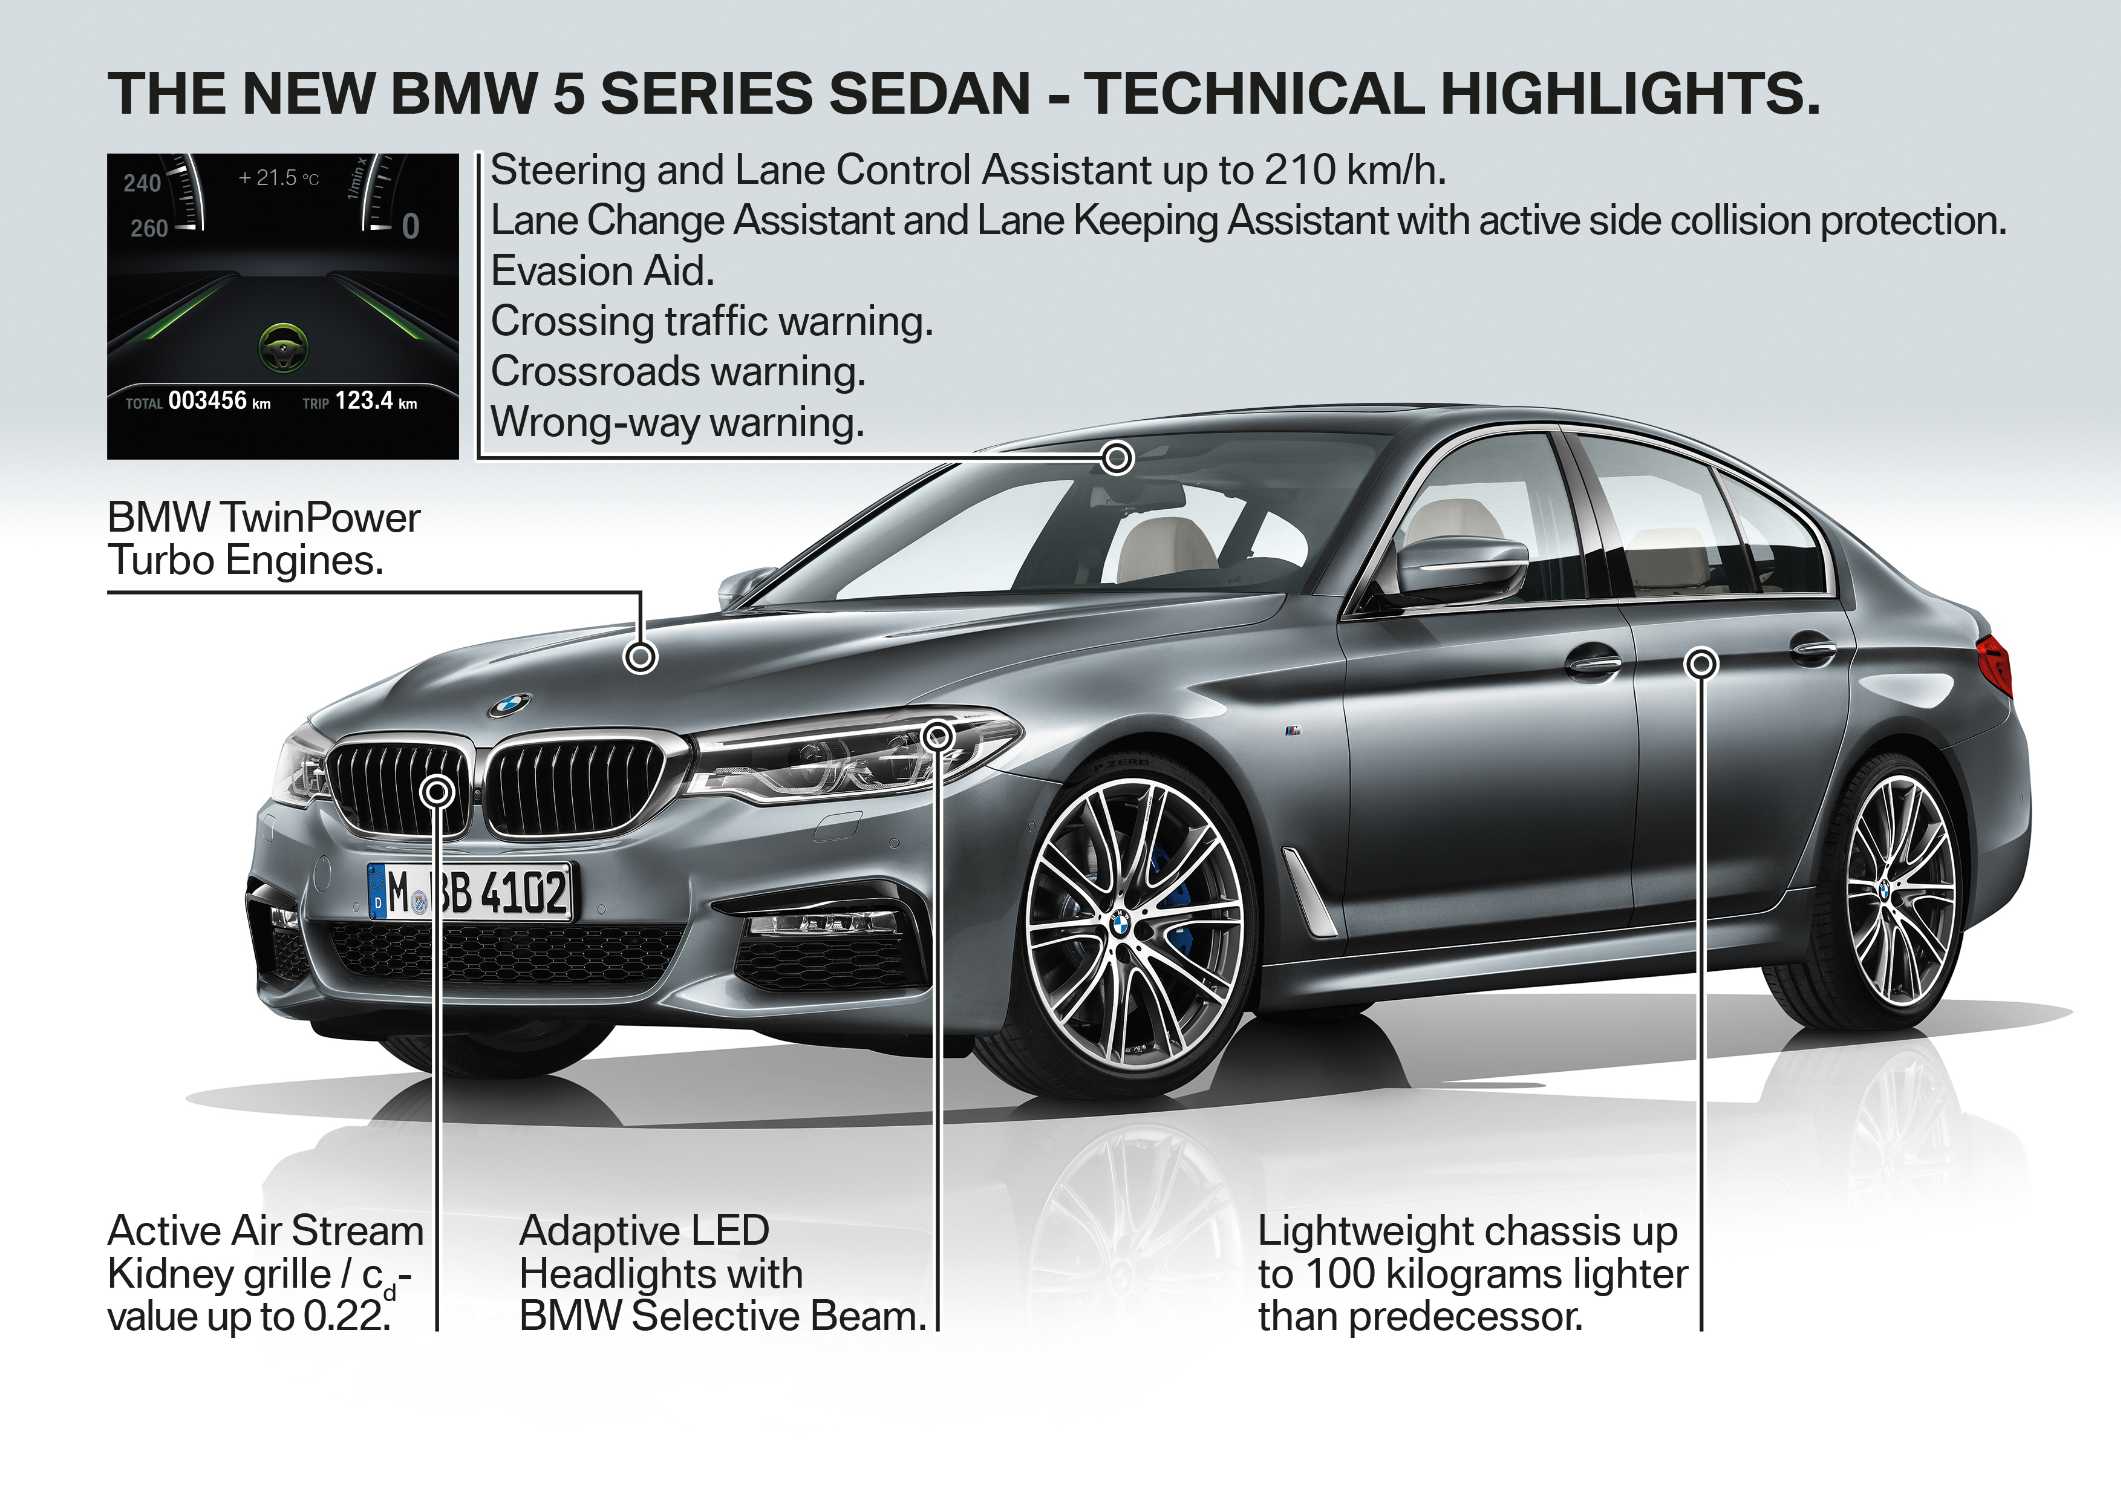 The new BMW 5 Series Sedan (10/2016).